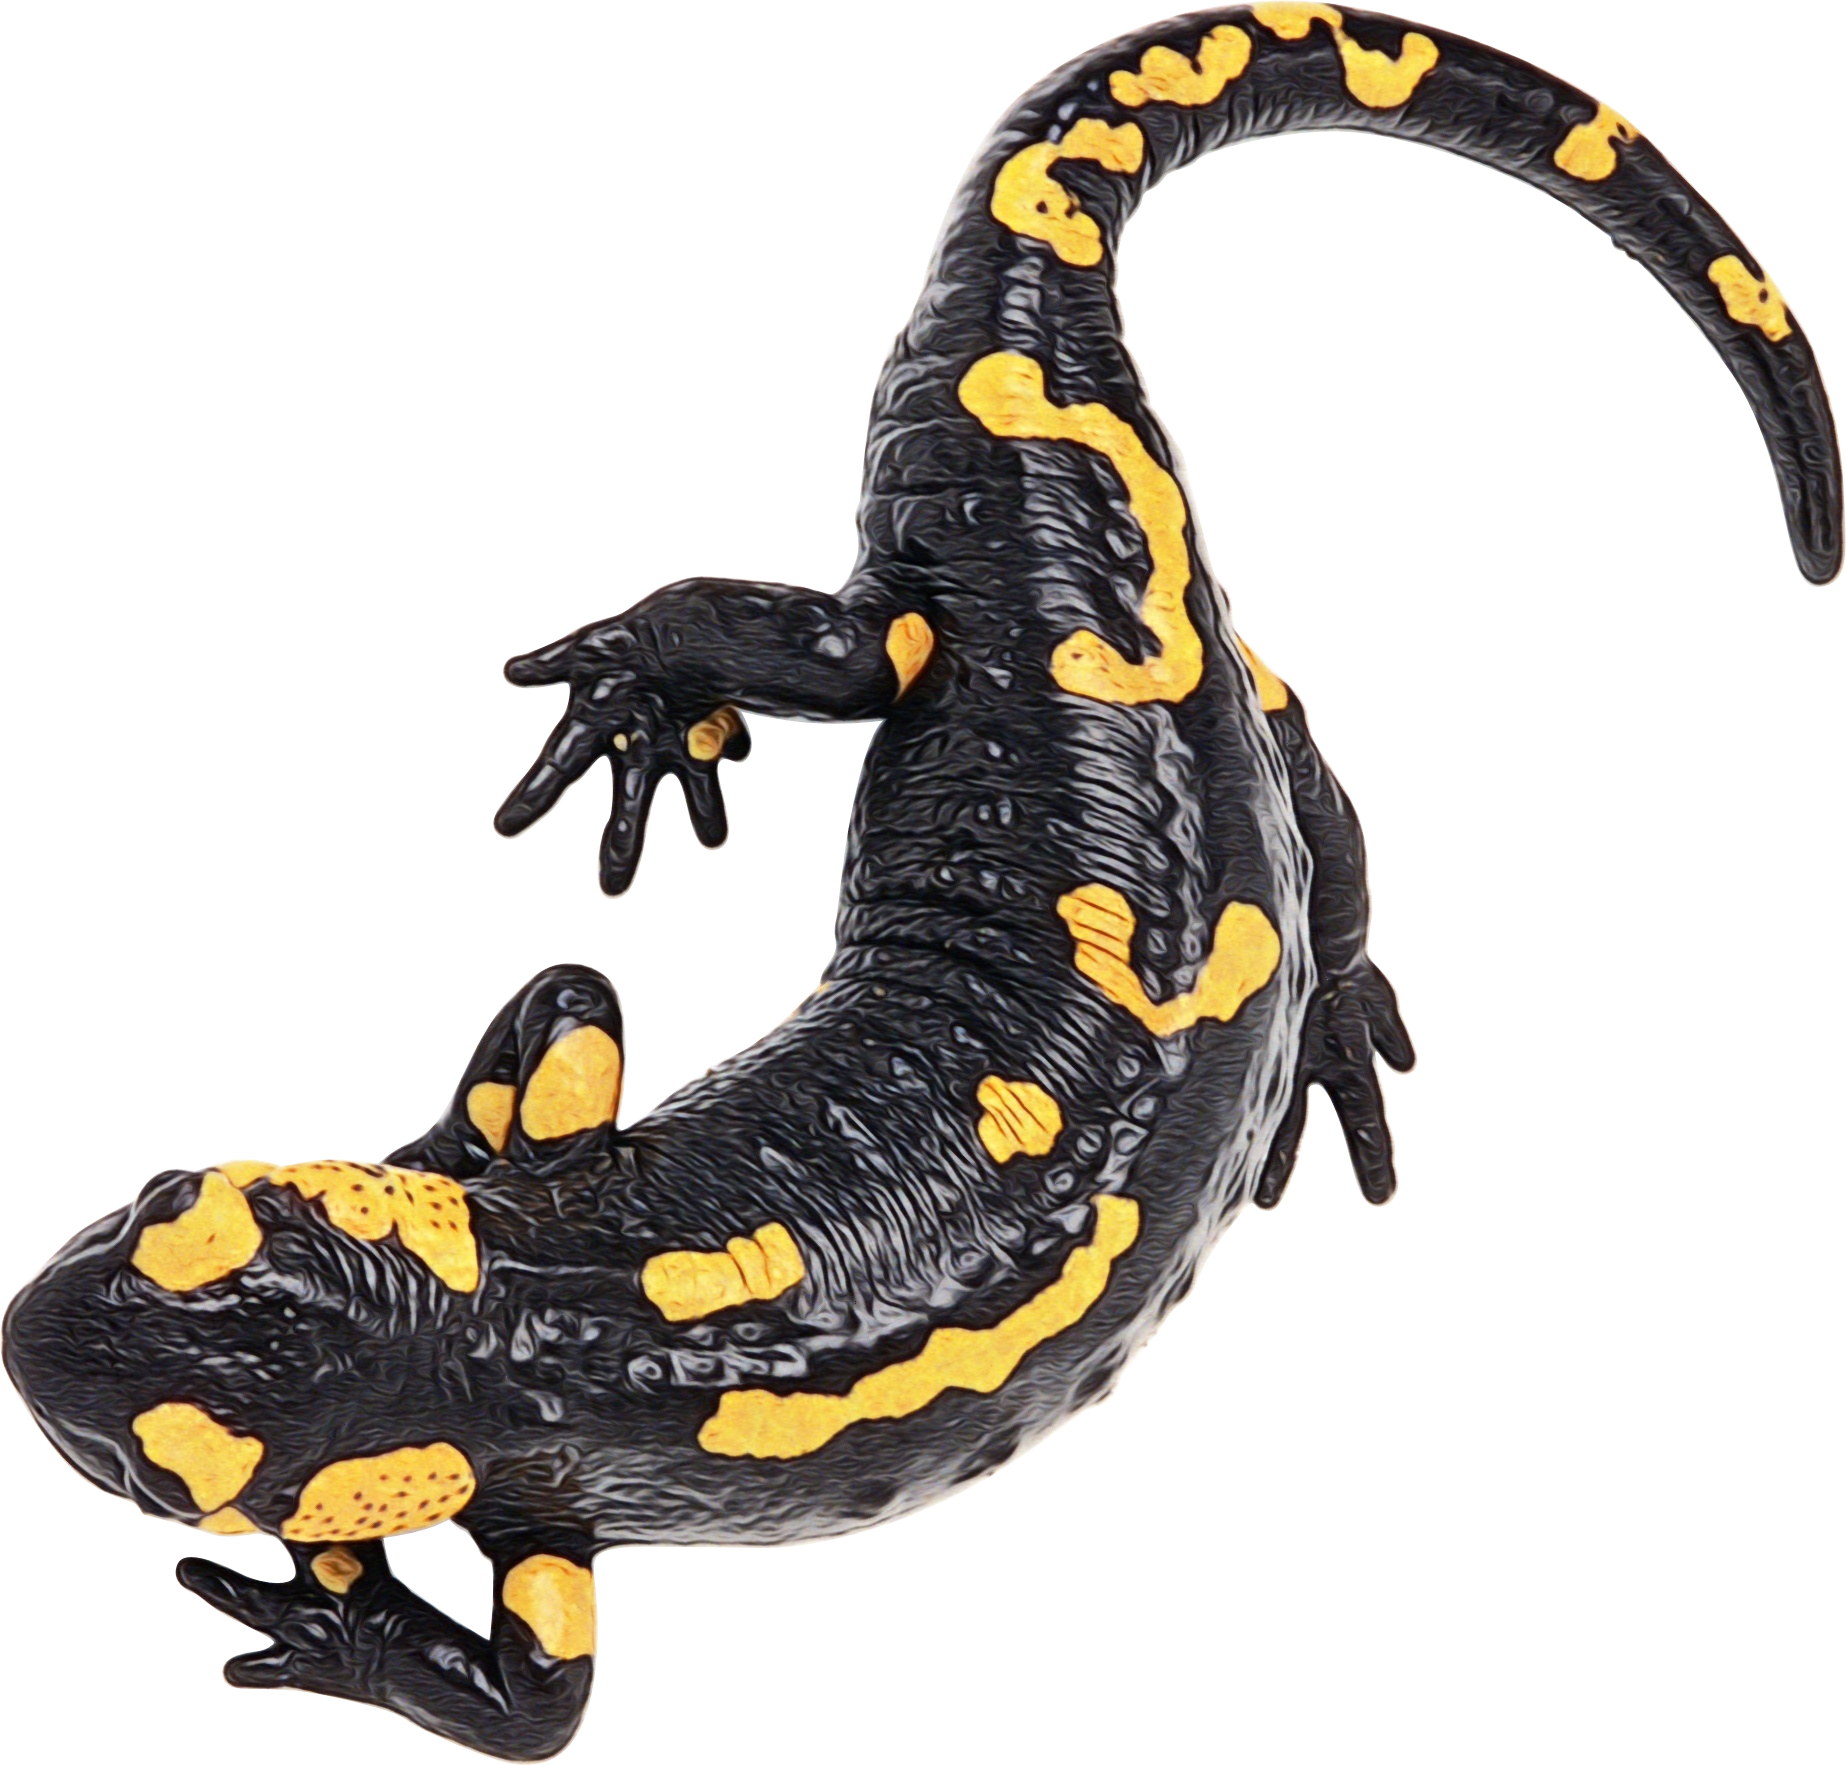 Salamander PNG Image File